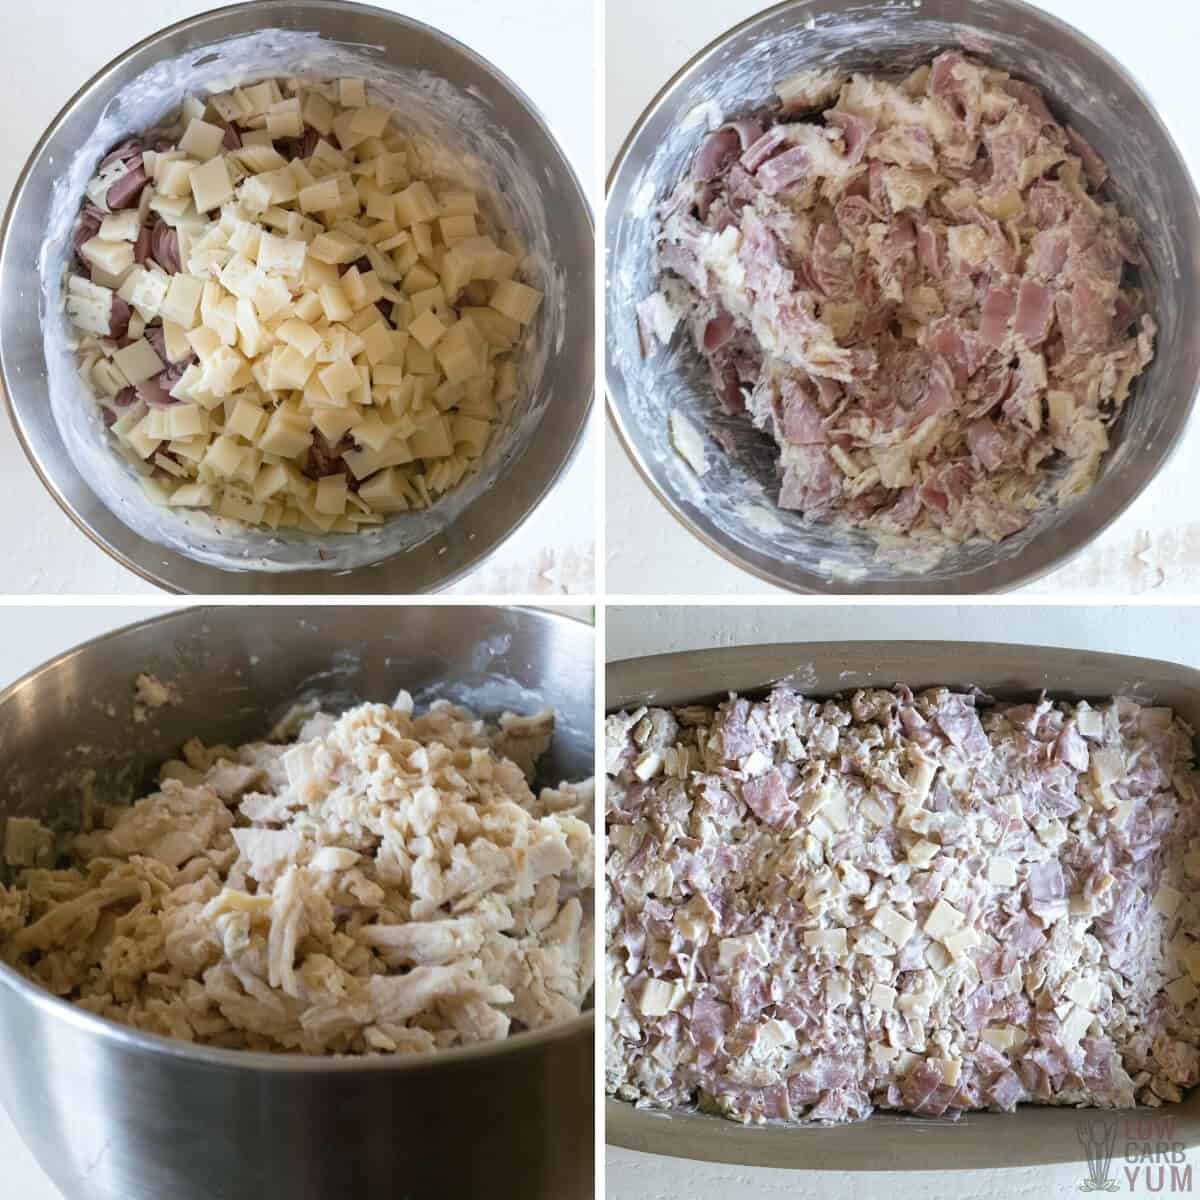 preparing the casserole